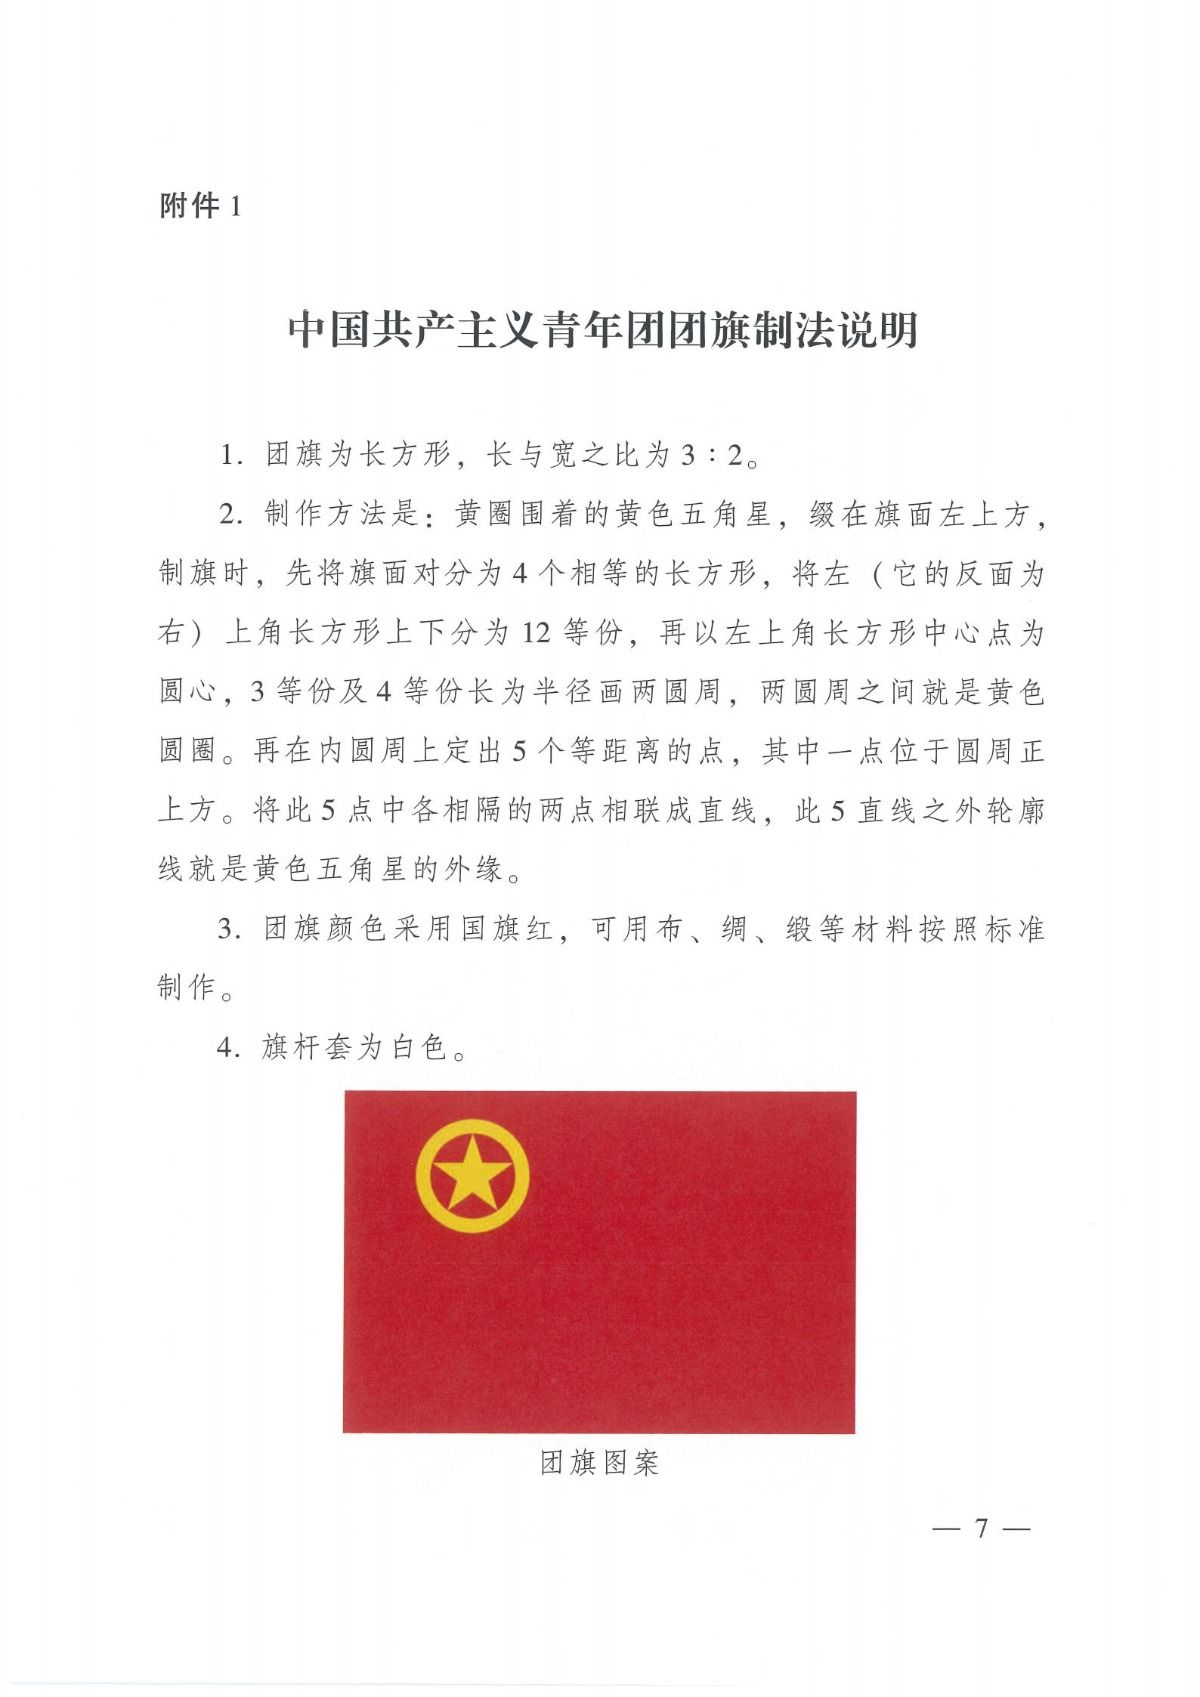 中国共产主义青年团团旗_06.jpg